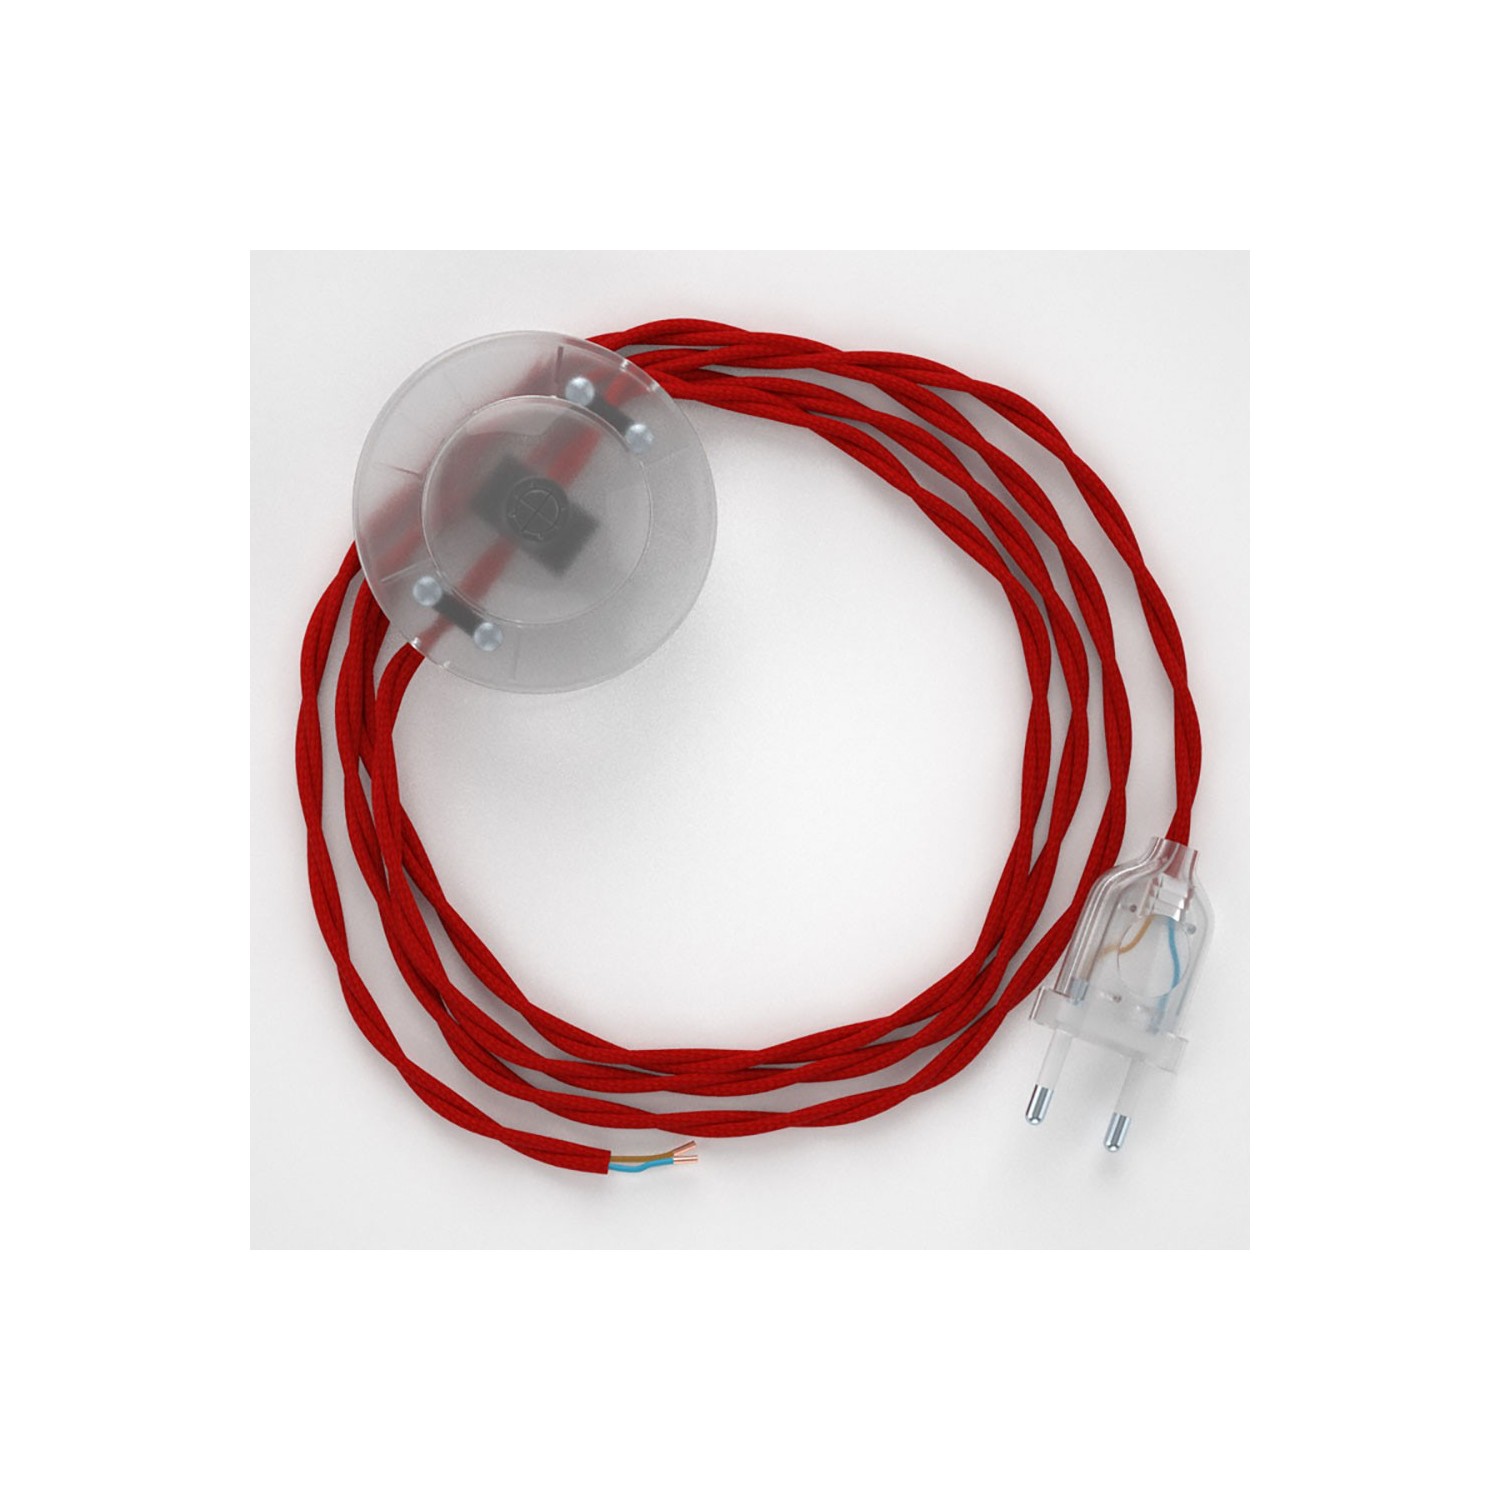 Στριφτό Υφασματινο Καλώδιο για Φωτιστικά Δαπέδου TM09 Κόκκινο - 3 m. Με διακόπτη ποδός και φις.